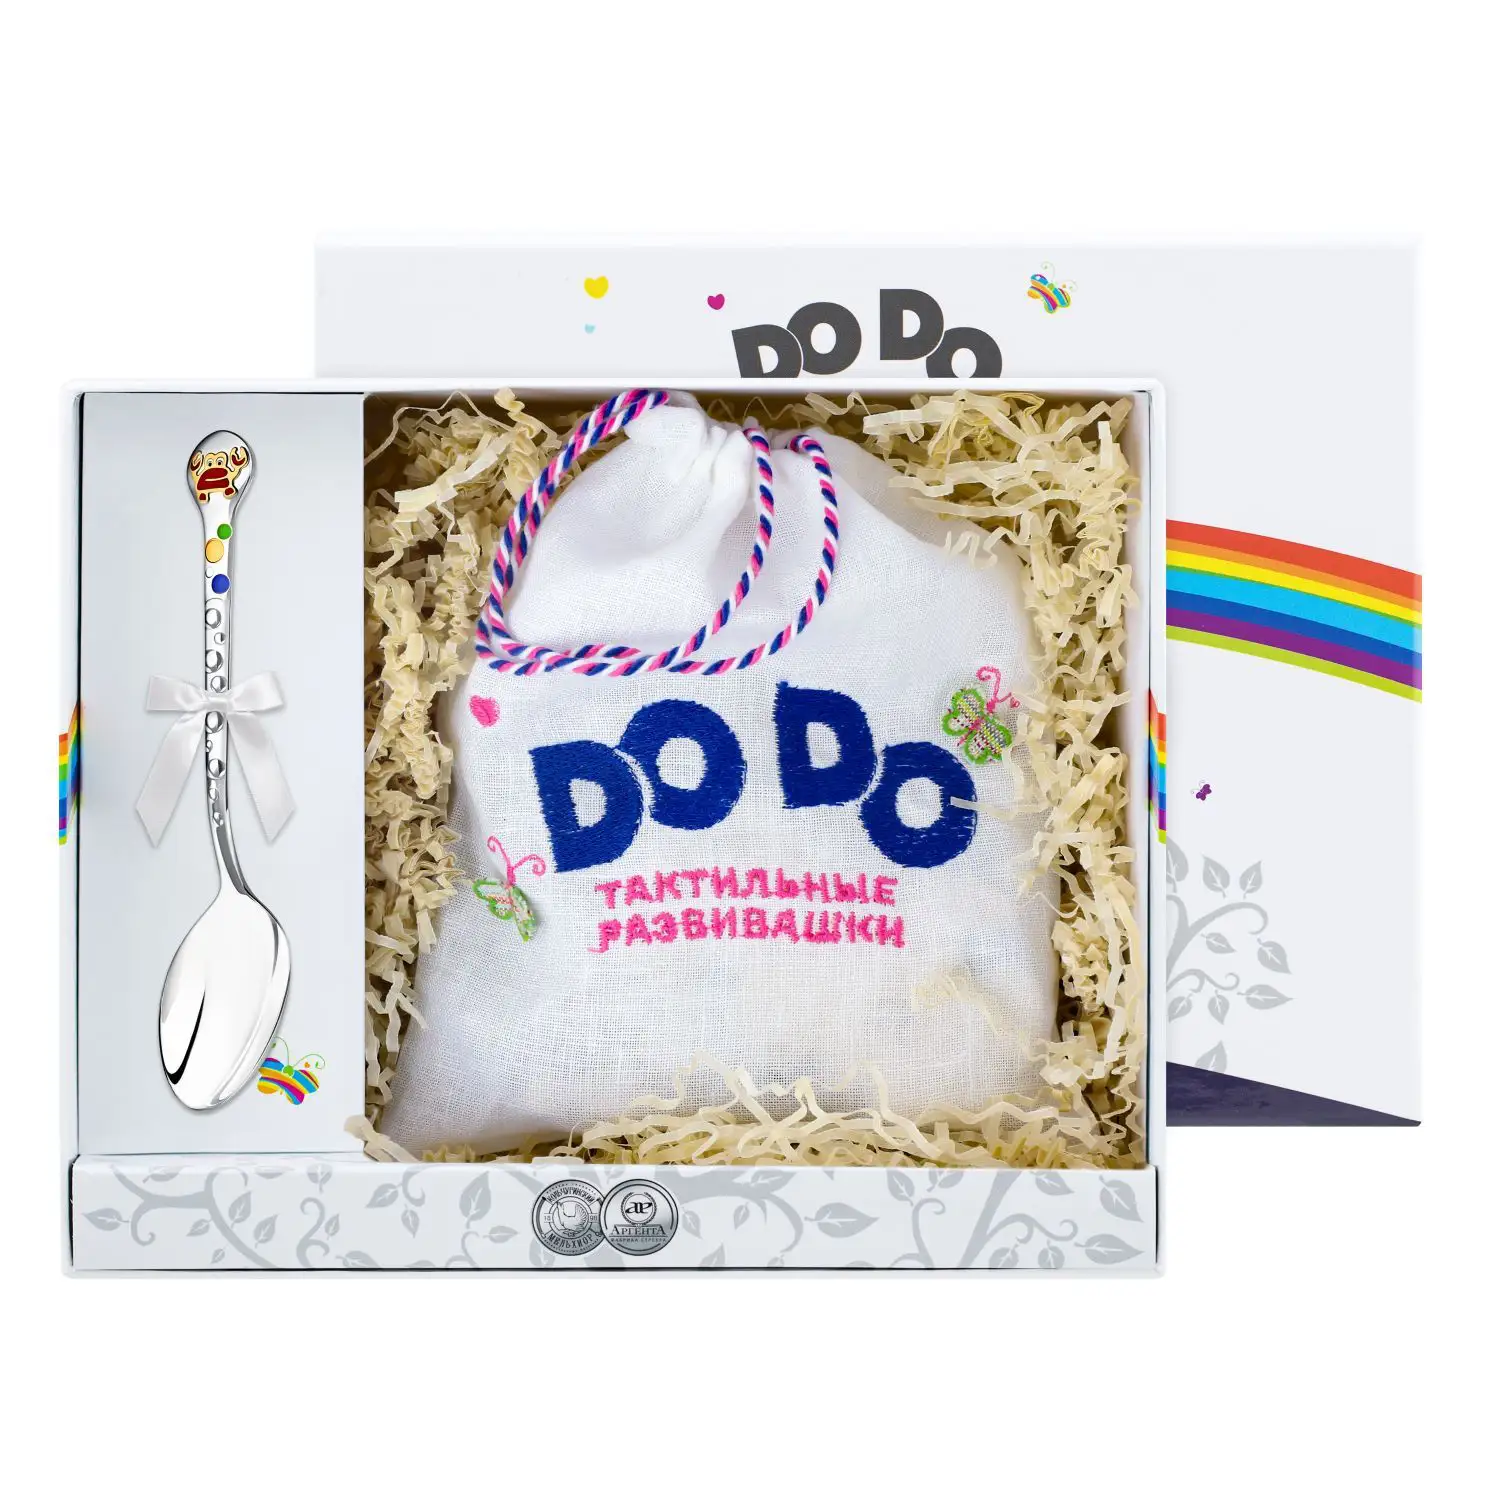 Набор детский DODO Крабик: пазл и ложка с позолотой и эмалью (Серебро 925) набор детский dodo миша с позолотой и с эмалью вилка и ложка серебро 925